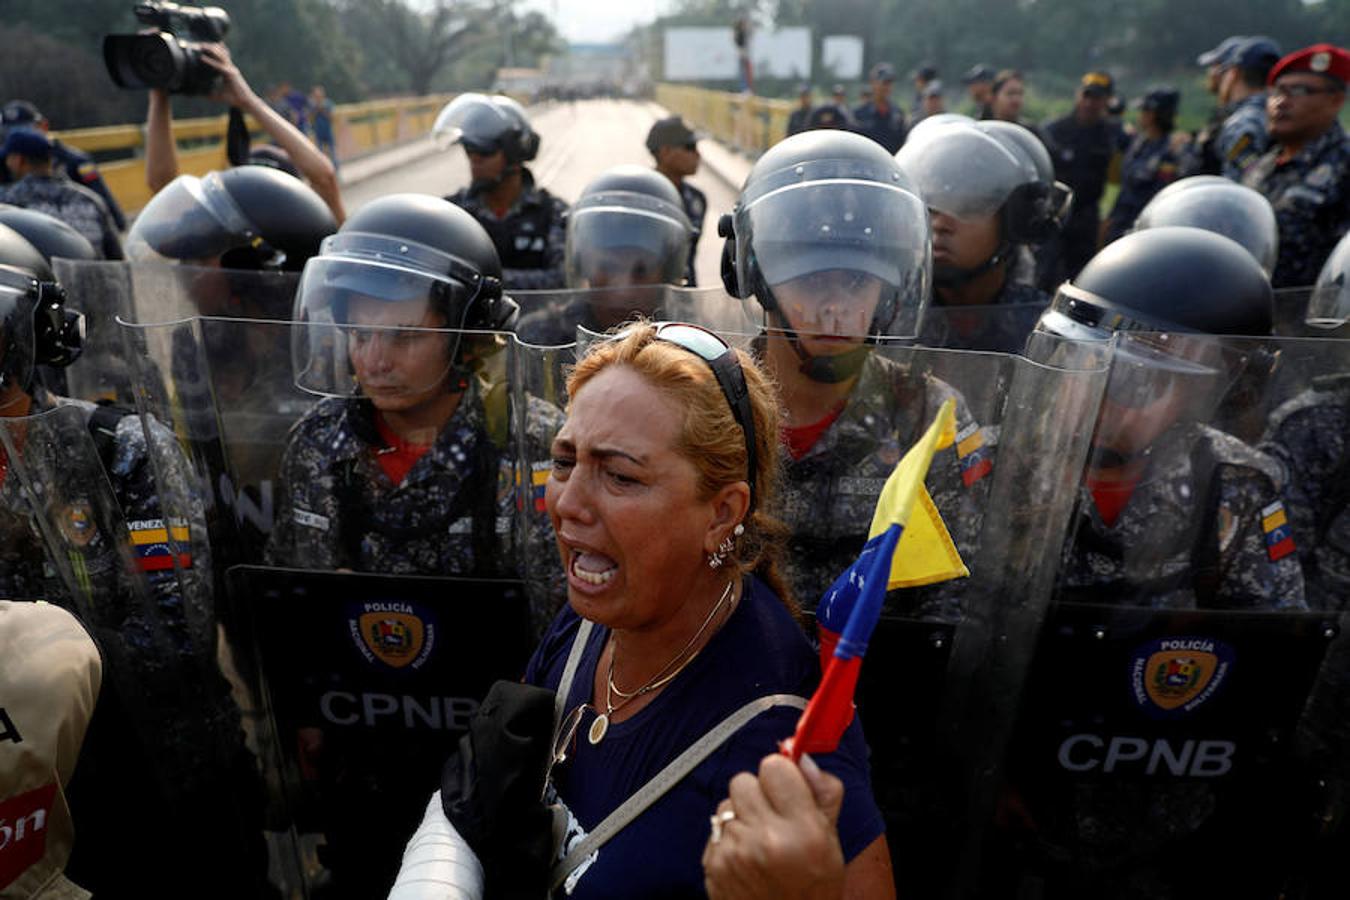 Las protestas contra Maduro en Venezuela, en imágenes